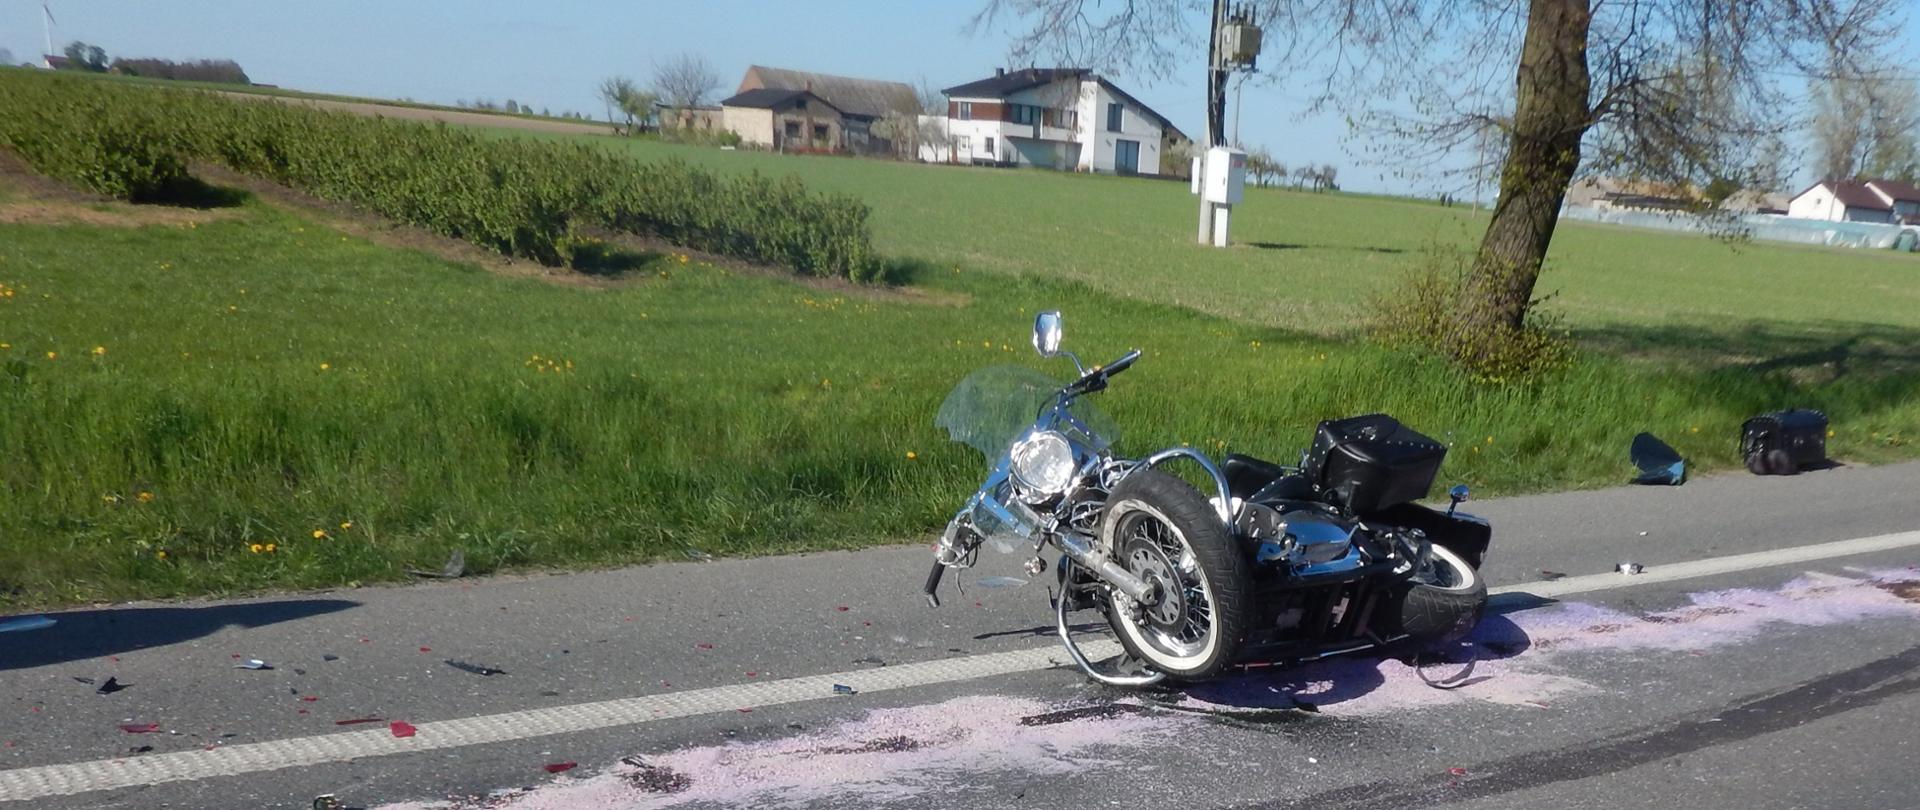 Zdjęcie przedstawia motocykl, który brał udział w zdarzeniu.